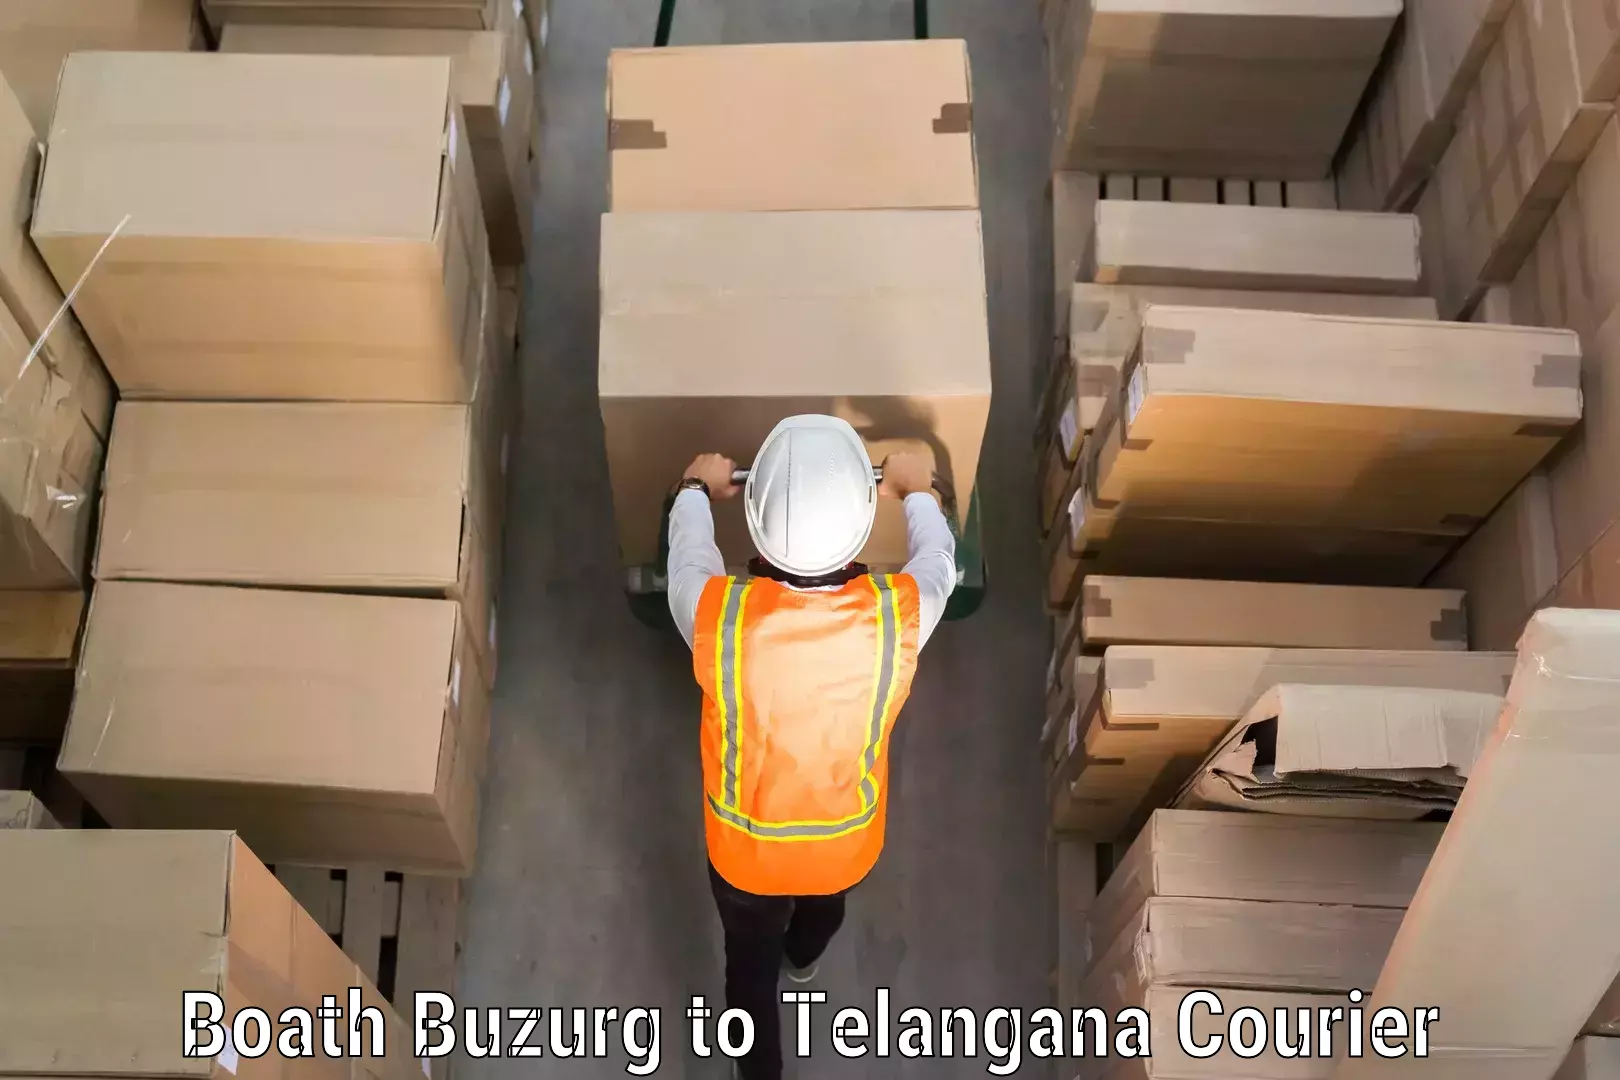 Door-to-door baggage service Boath Buzurg to Manuguru